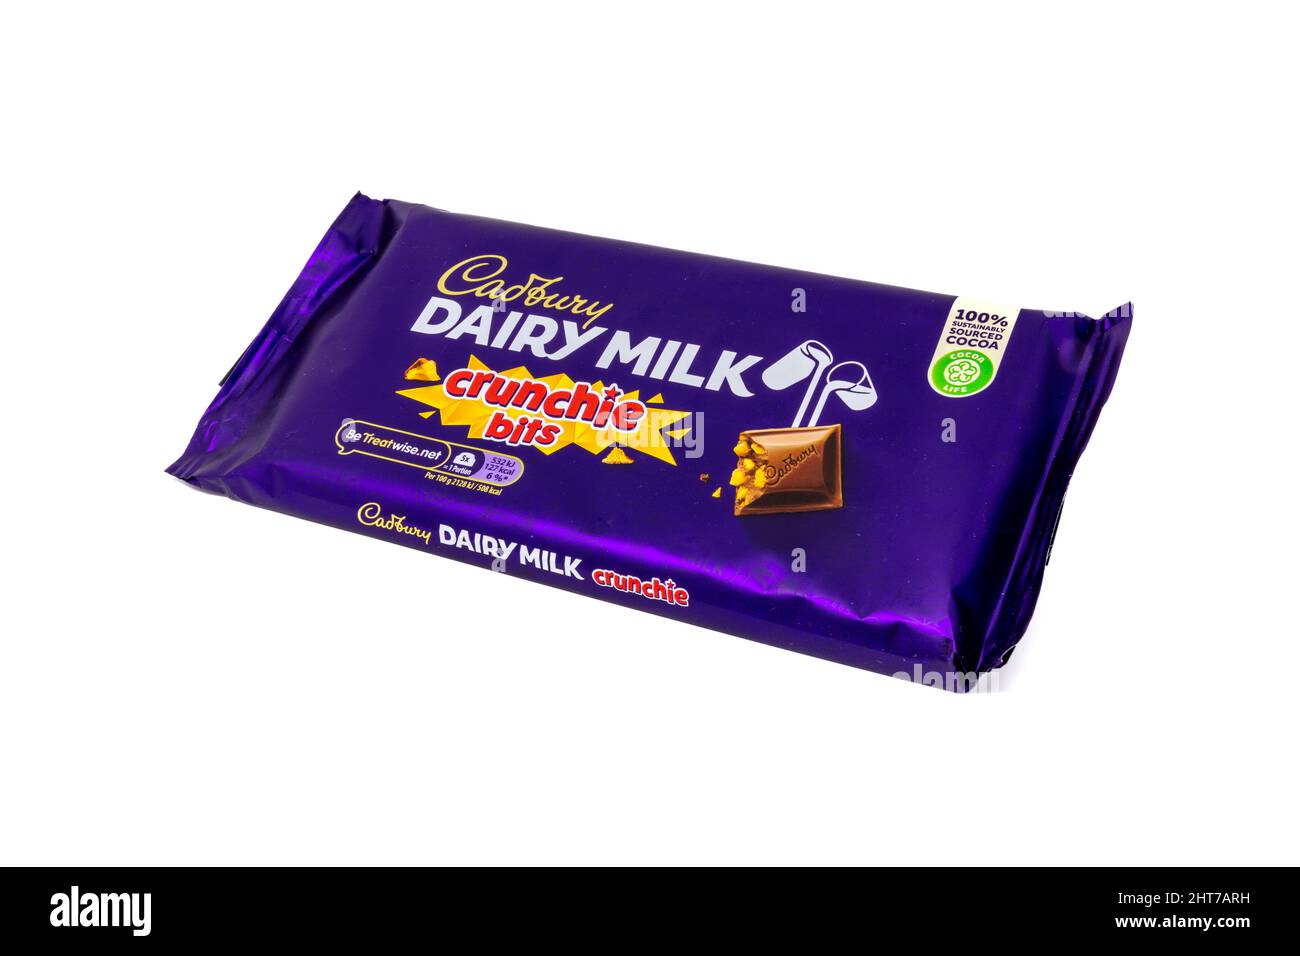 Cadbury Dairy Milk with Crunchie Bits Chocolate Bar Stock Photo